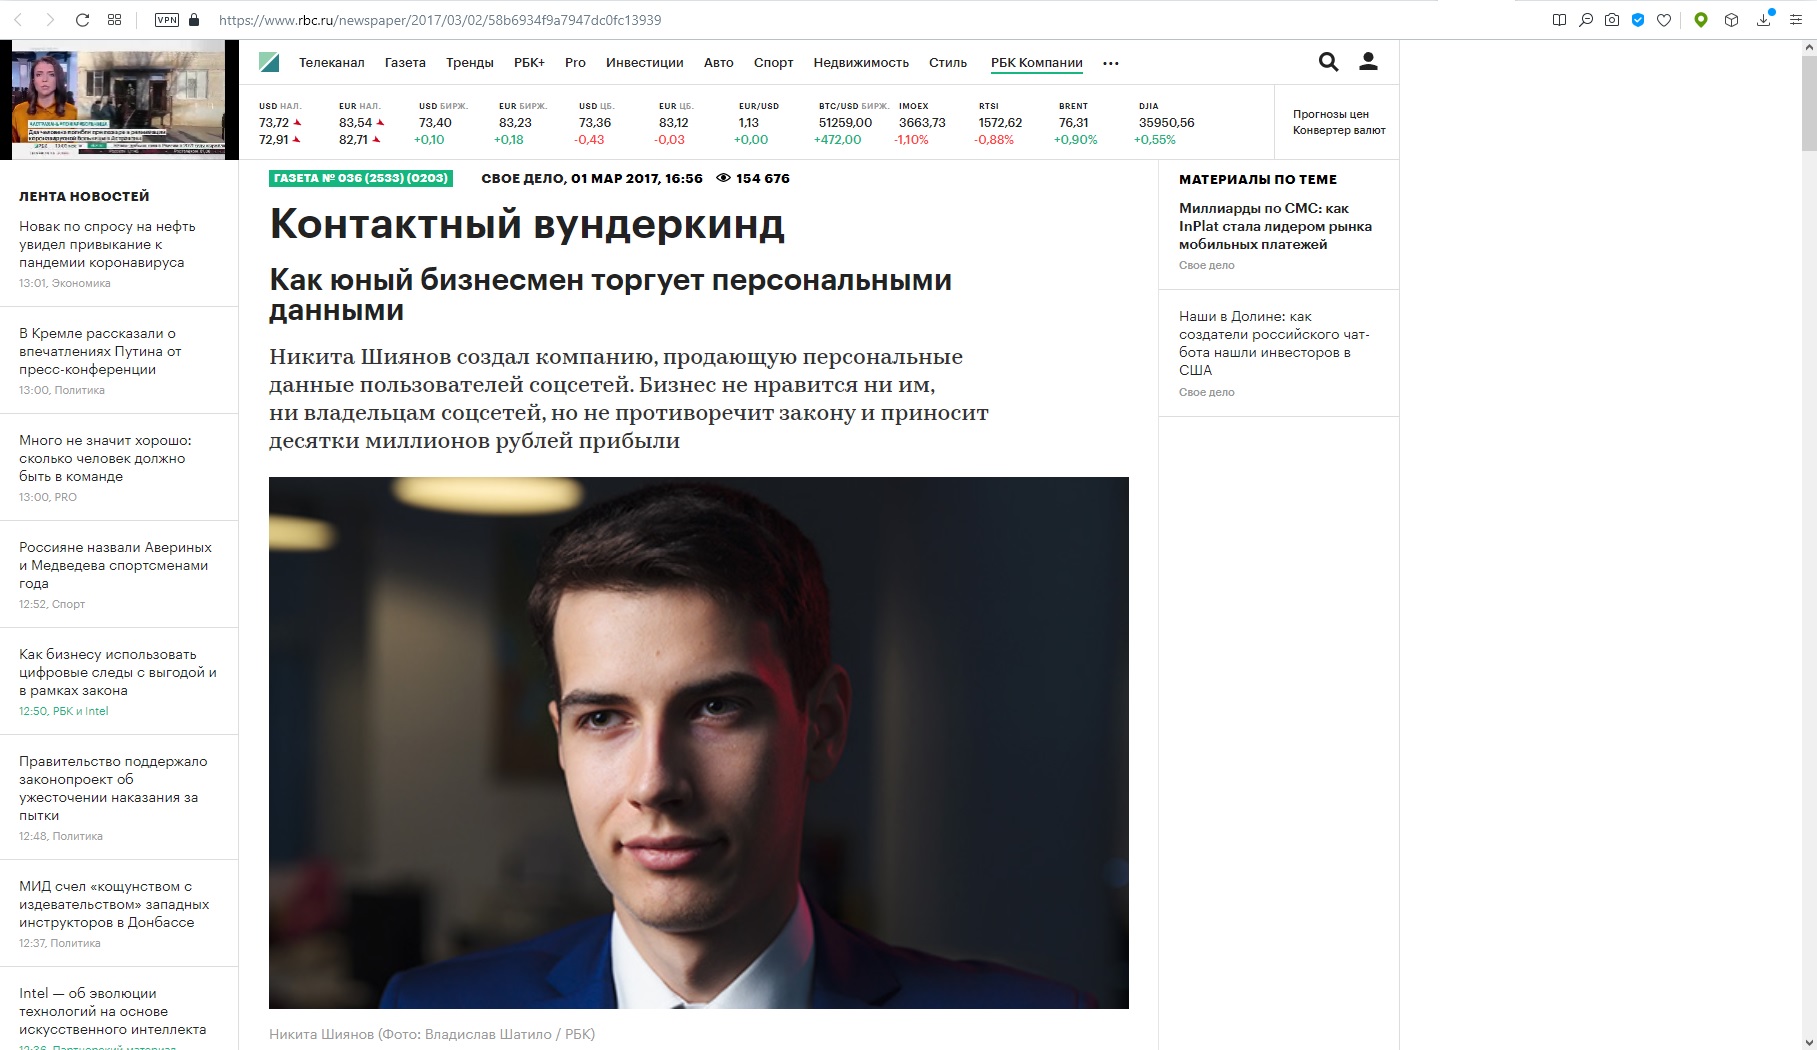 Пример заказной рекламы директора Никиты Шиянова